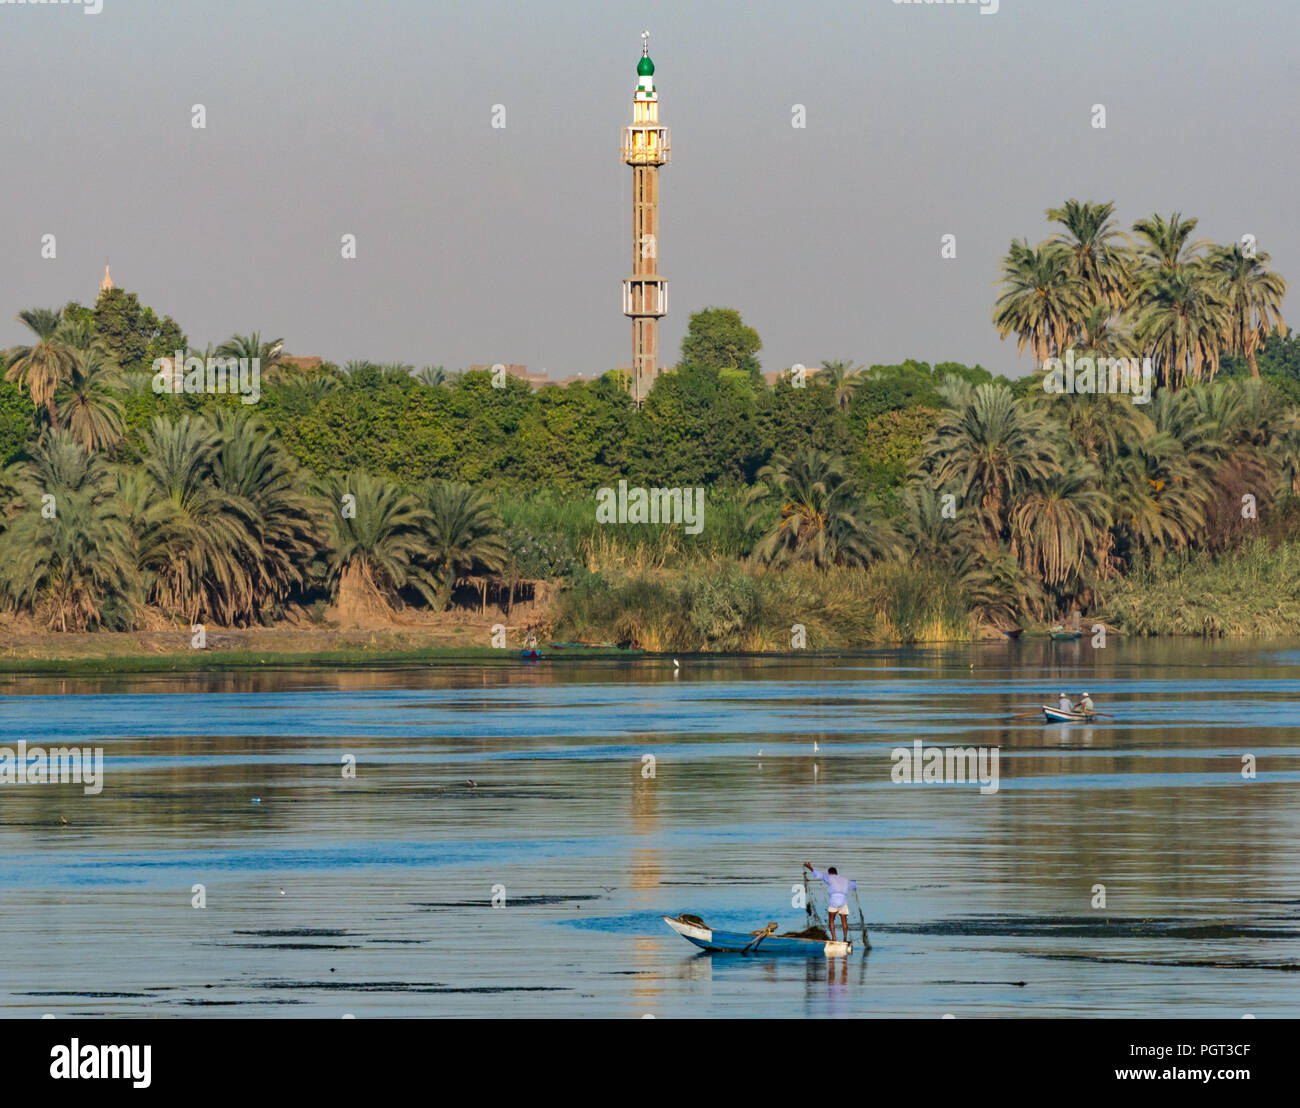 Ägyptische lokaler Mann in alten Ruderboot fischen mit Netz im frühen Sonnenlicht, mit hohen Moschee Minarett, Nil, Ägypten, Afrika Stockfoto